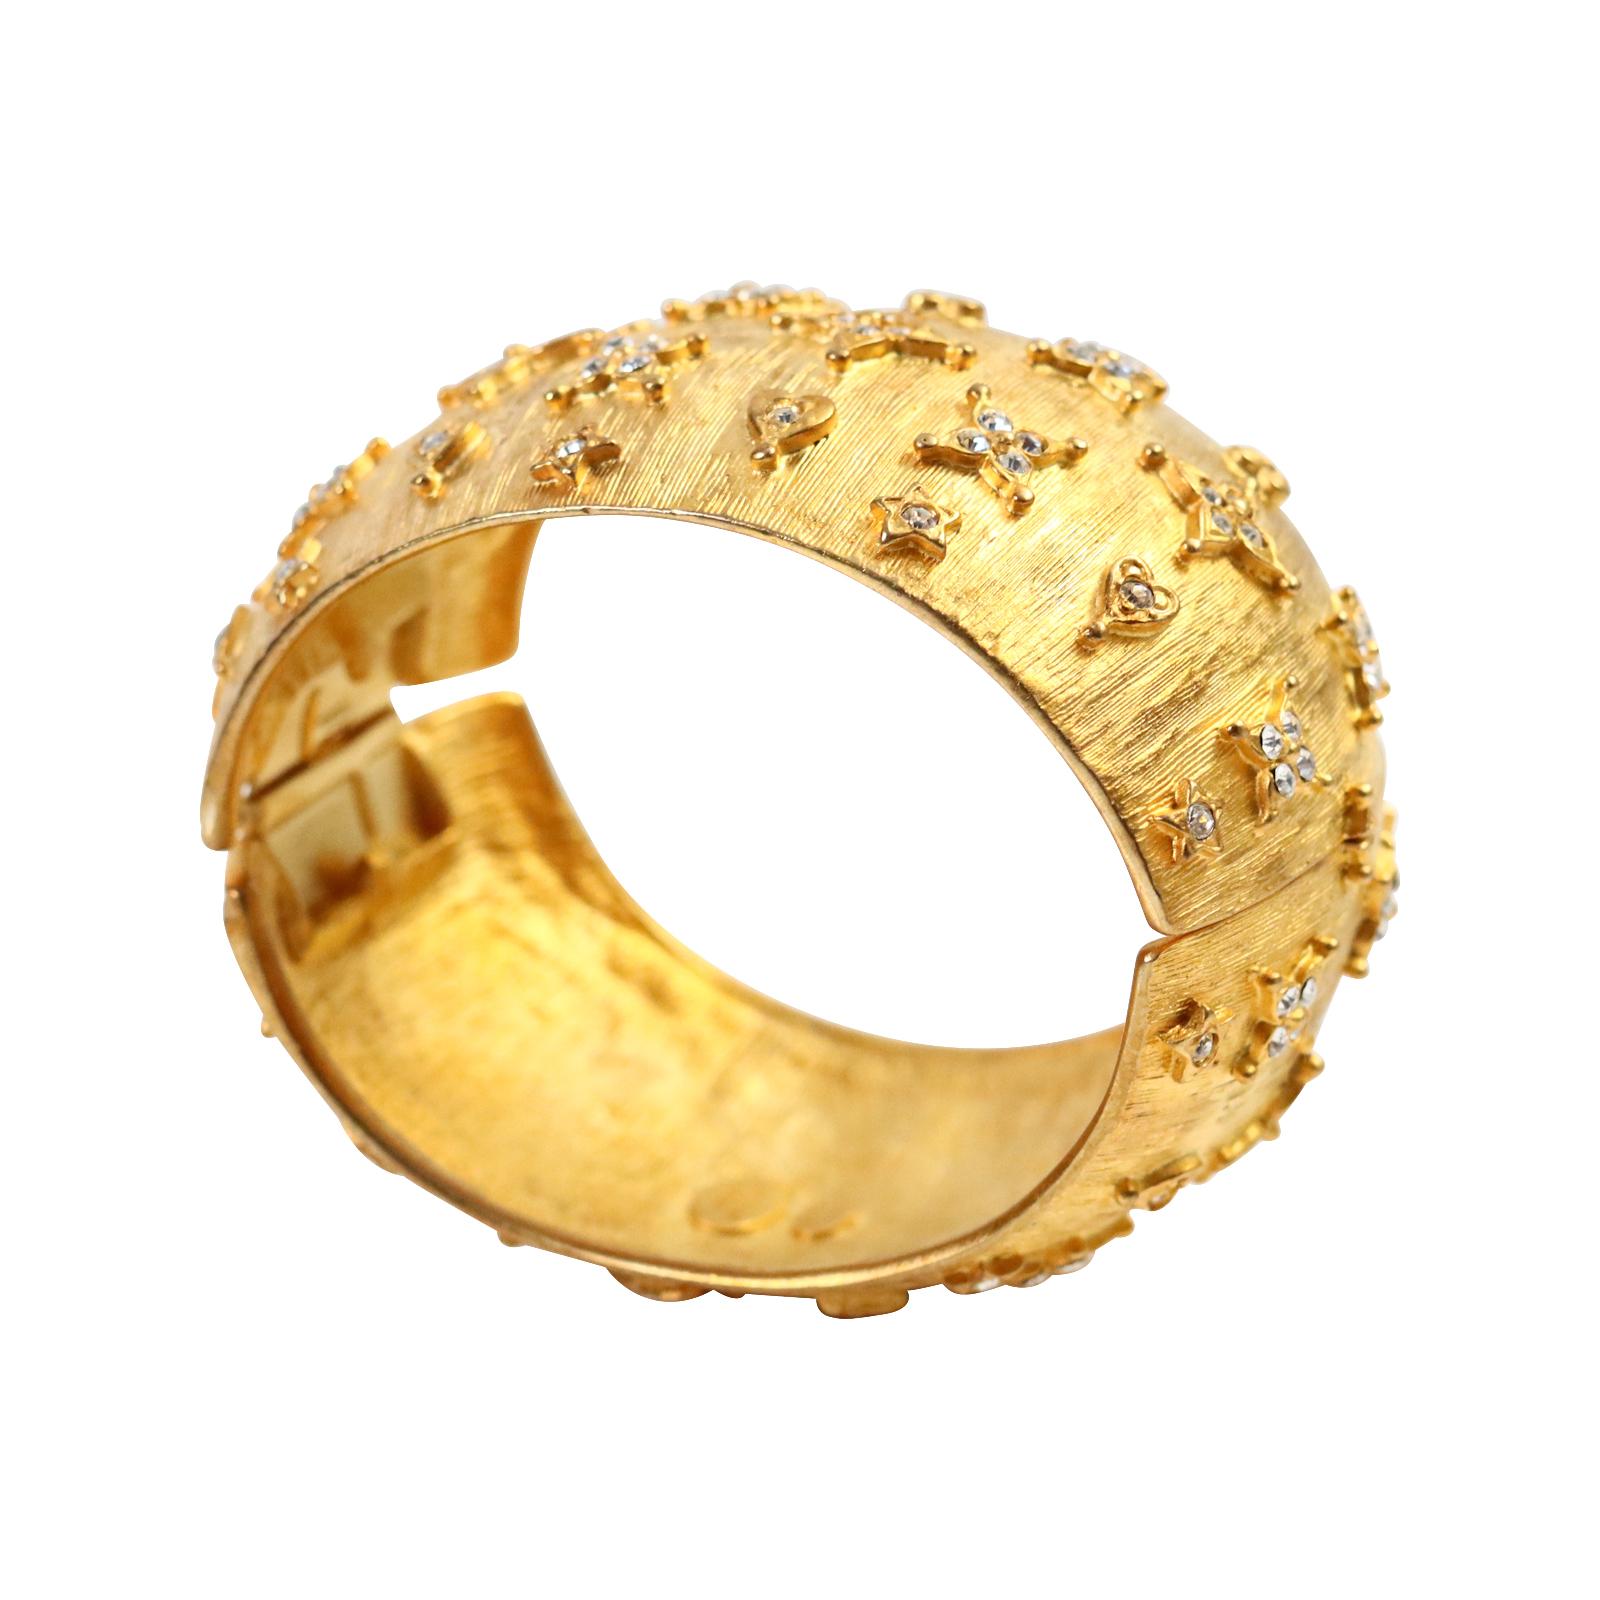 Vintage Kenneth Lane's Goldarmband mit klaren Kristallen CIRCA 1990er Jahre.  Eher oval geformt. Dieses Stück ist fast eine exakte Kopie des signierten Armbands von Maison Goossens, das ich auf der Website für den dreifachen Preis anbiete.  Dieser